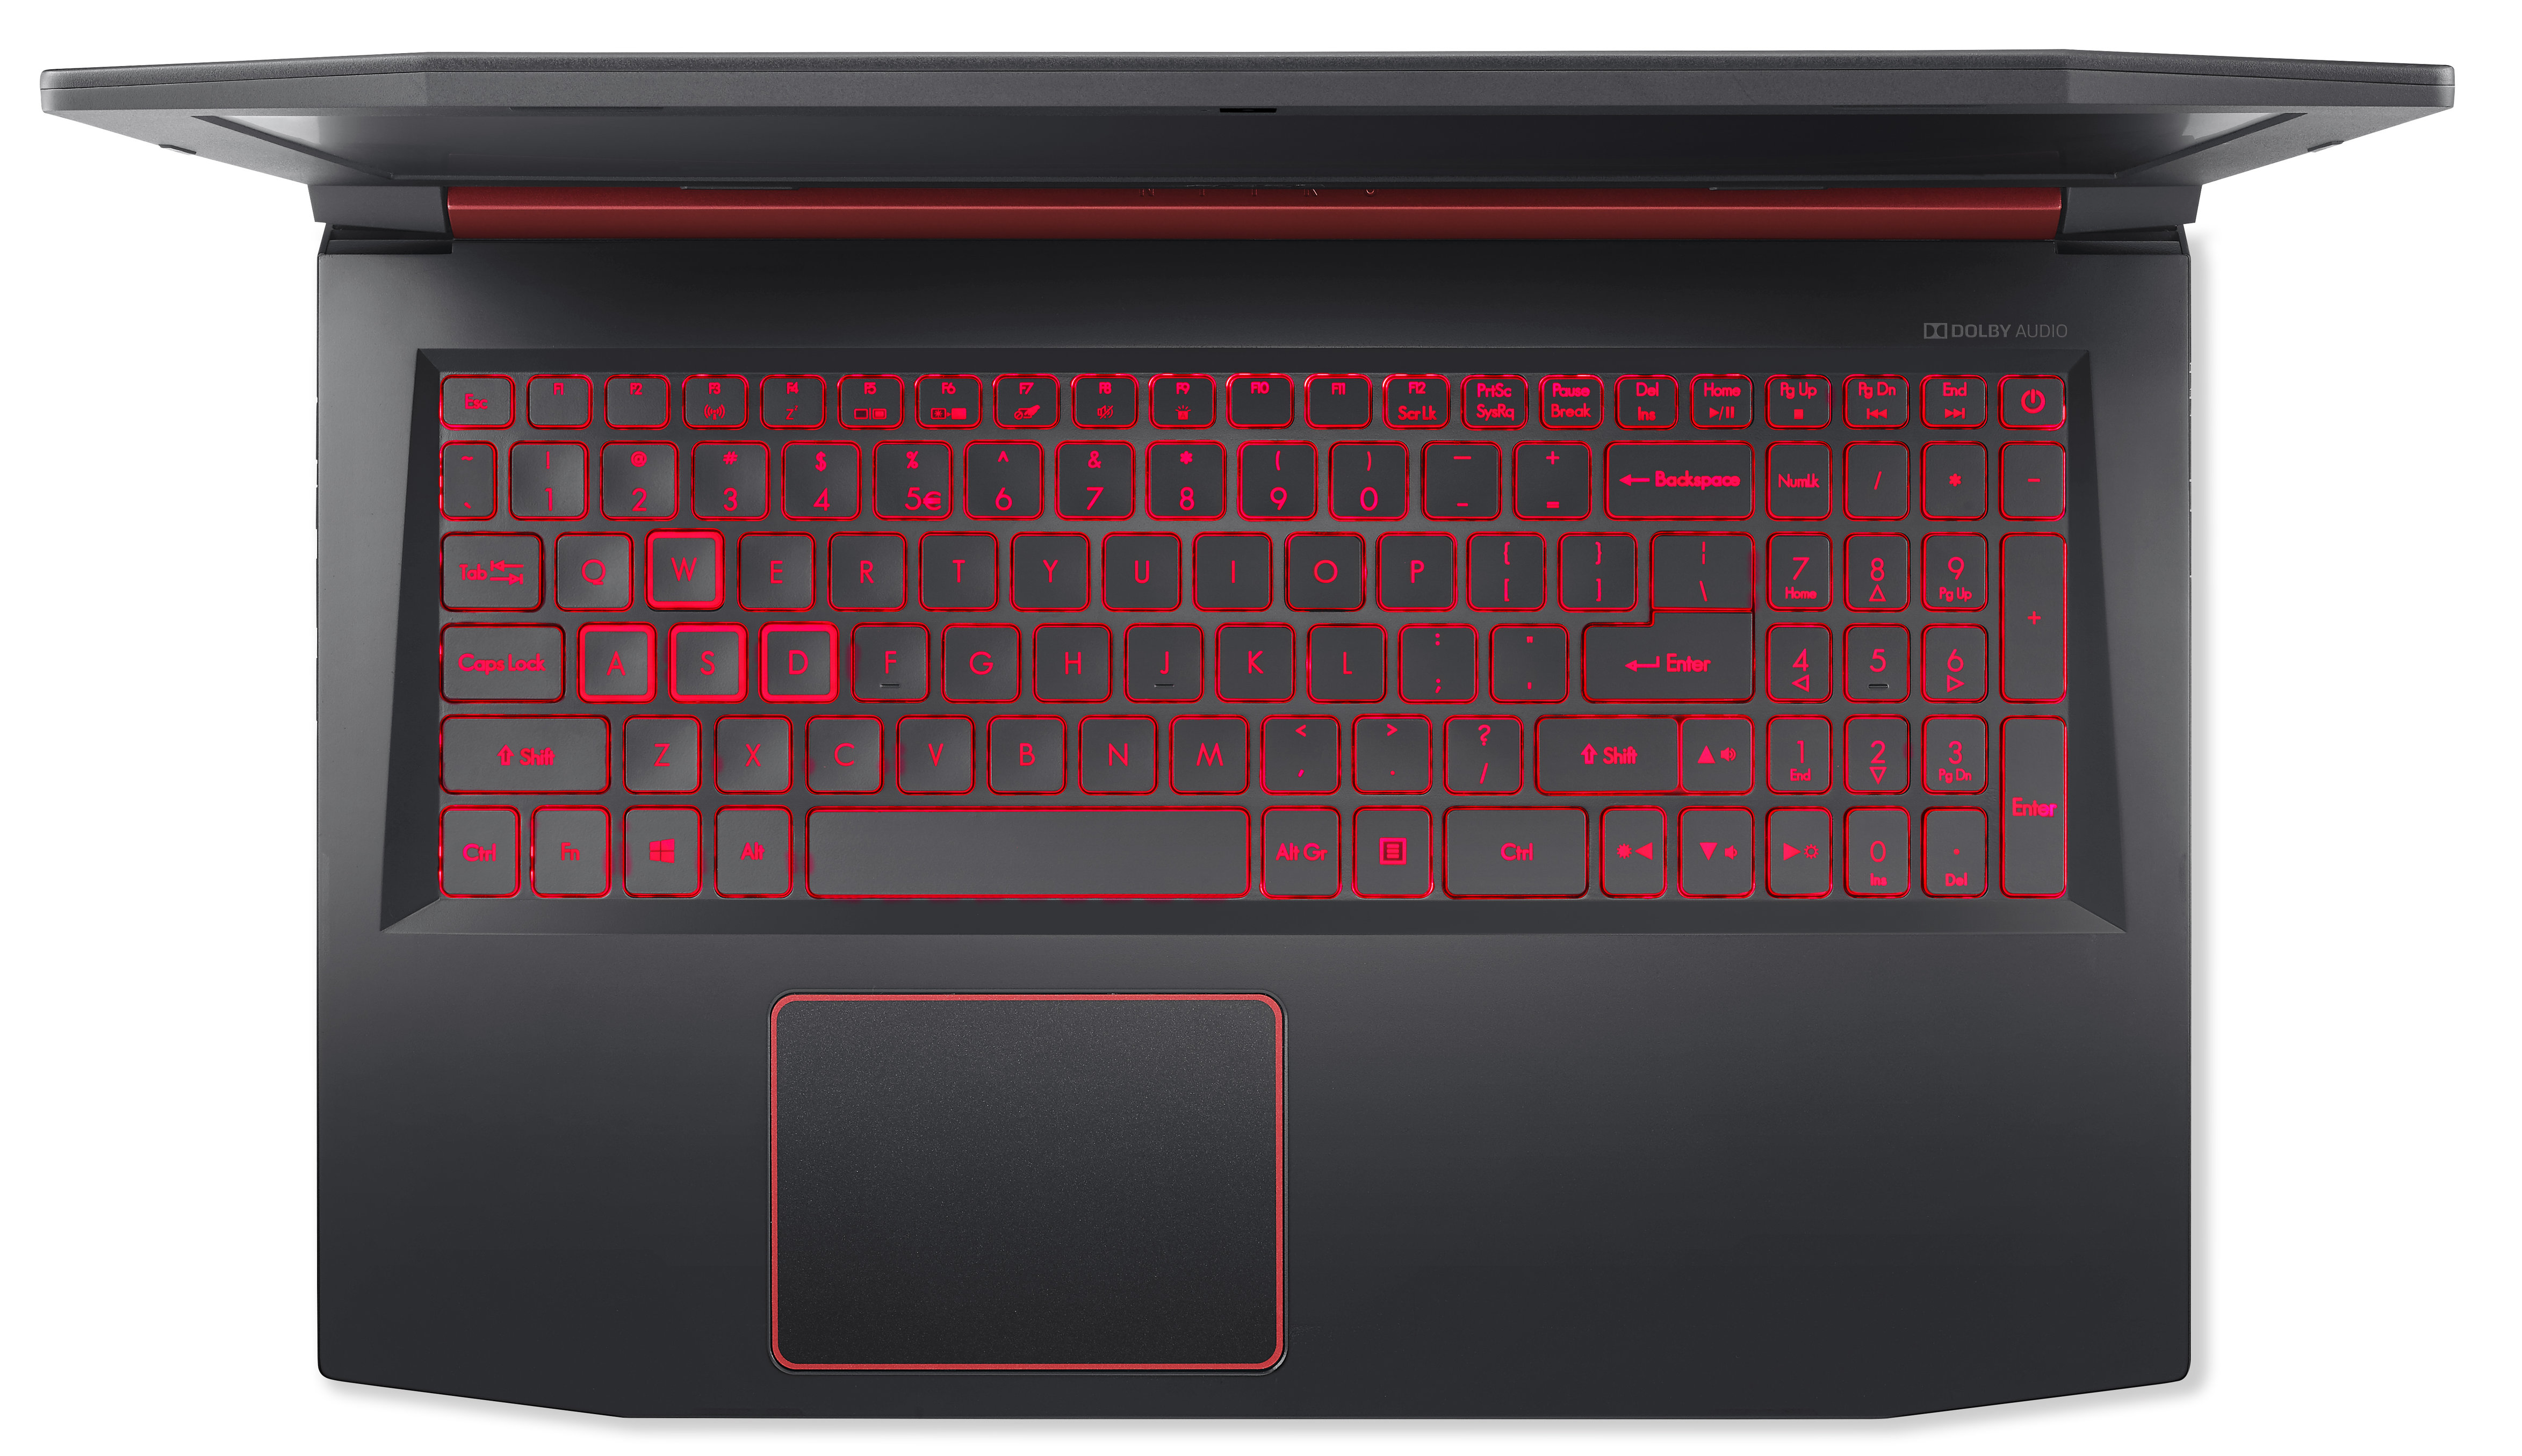 Acer Nitro 5 red-lit keyboard